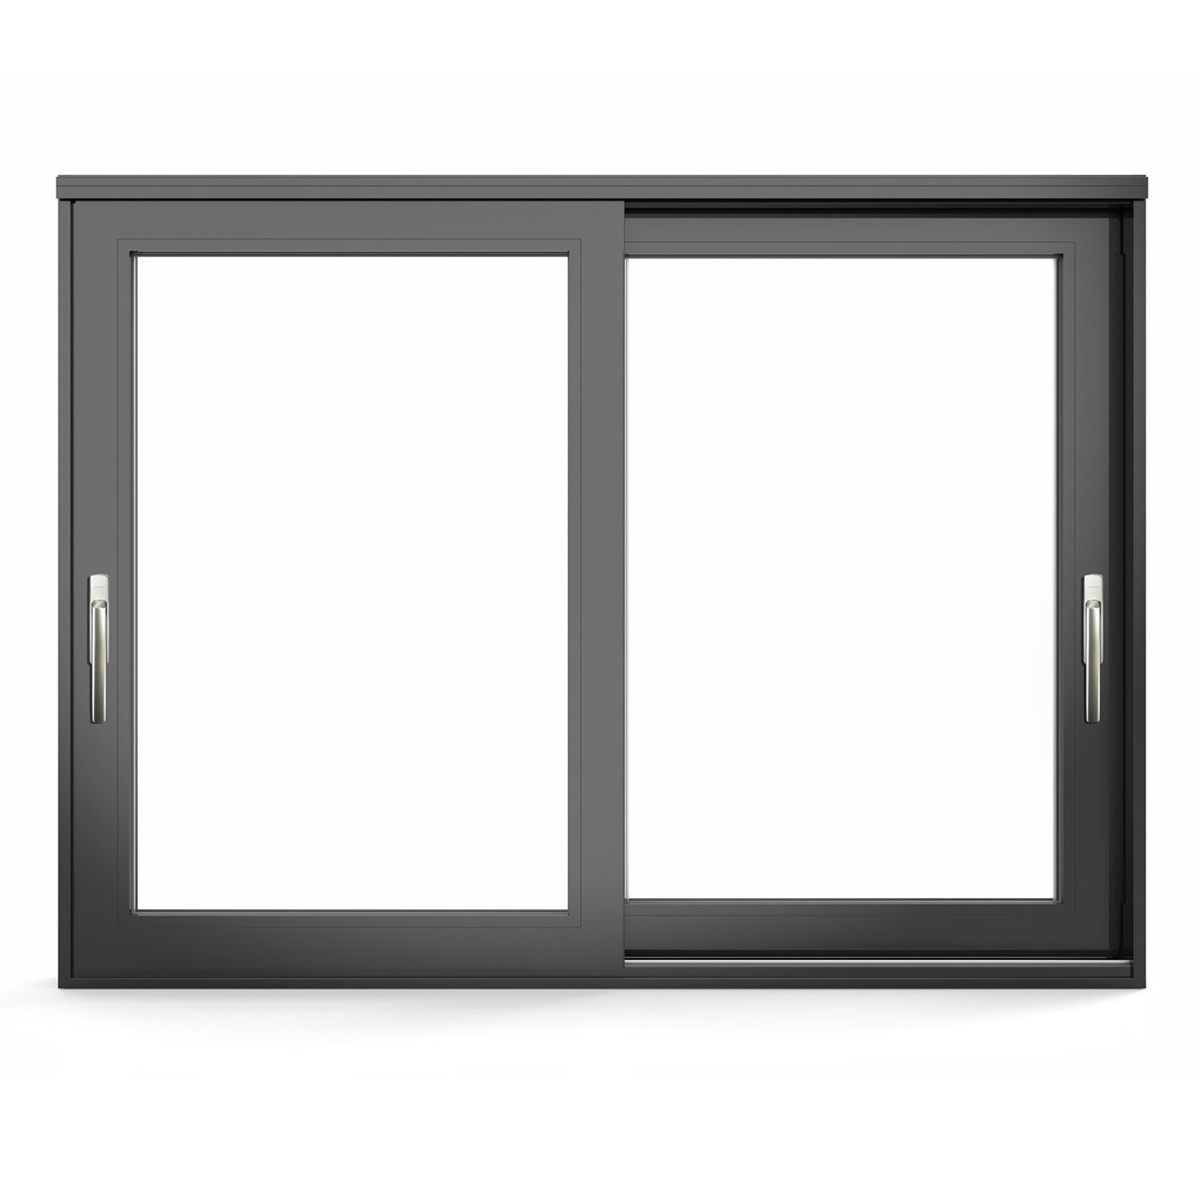 Porte à panneau de verre levant et coulissant en aluminium de la série HD190
